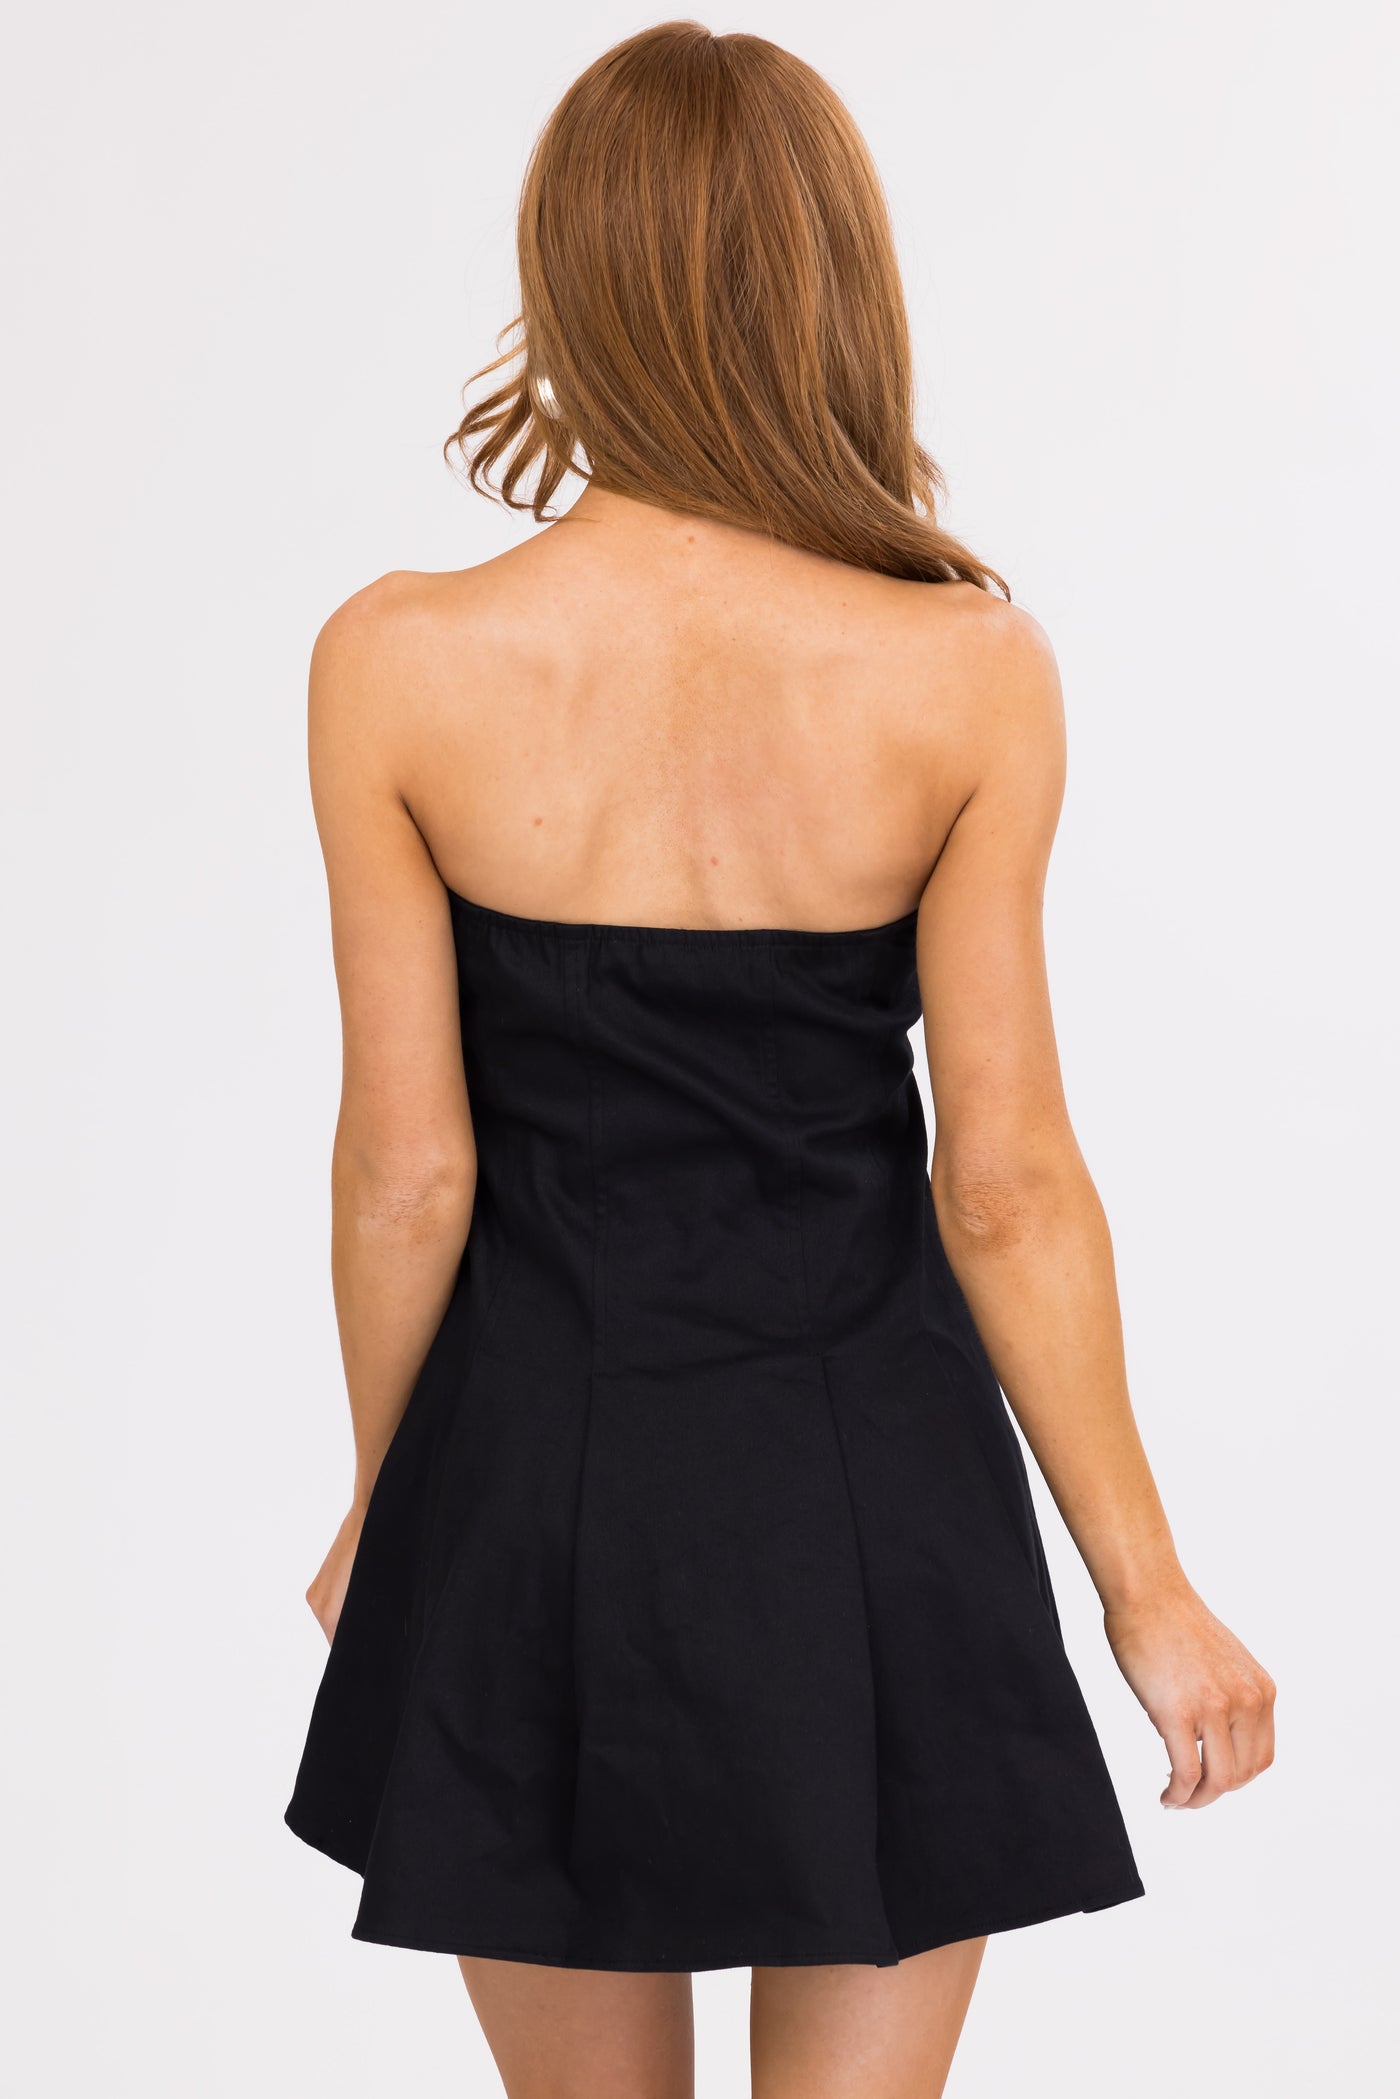 Black Strapless Flared Skirt Mini Dress